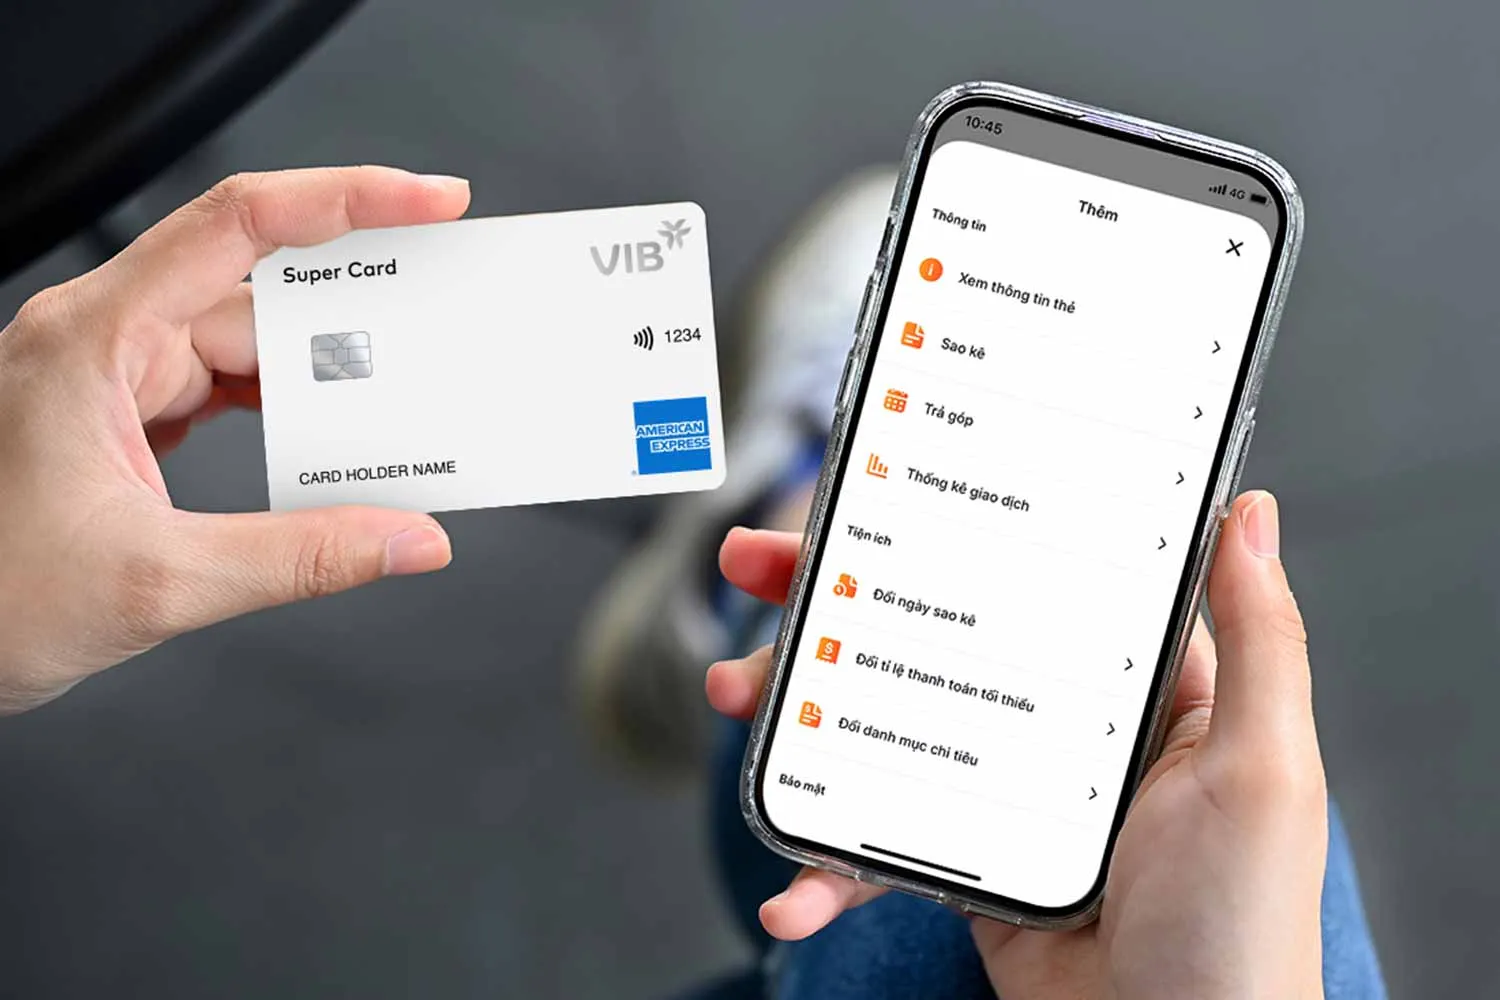 Tùy chọn số tiền thanh toán tối thiểu thẻ tín dụng với VIB Super Card